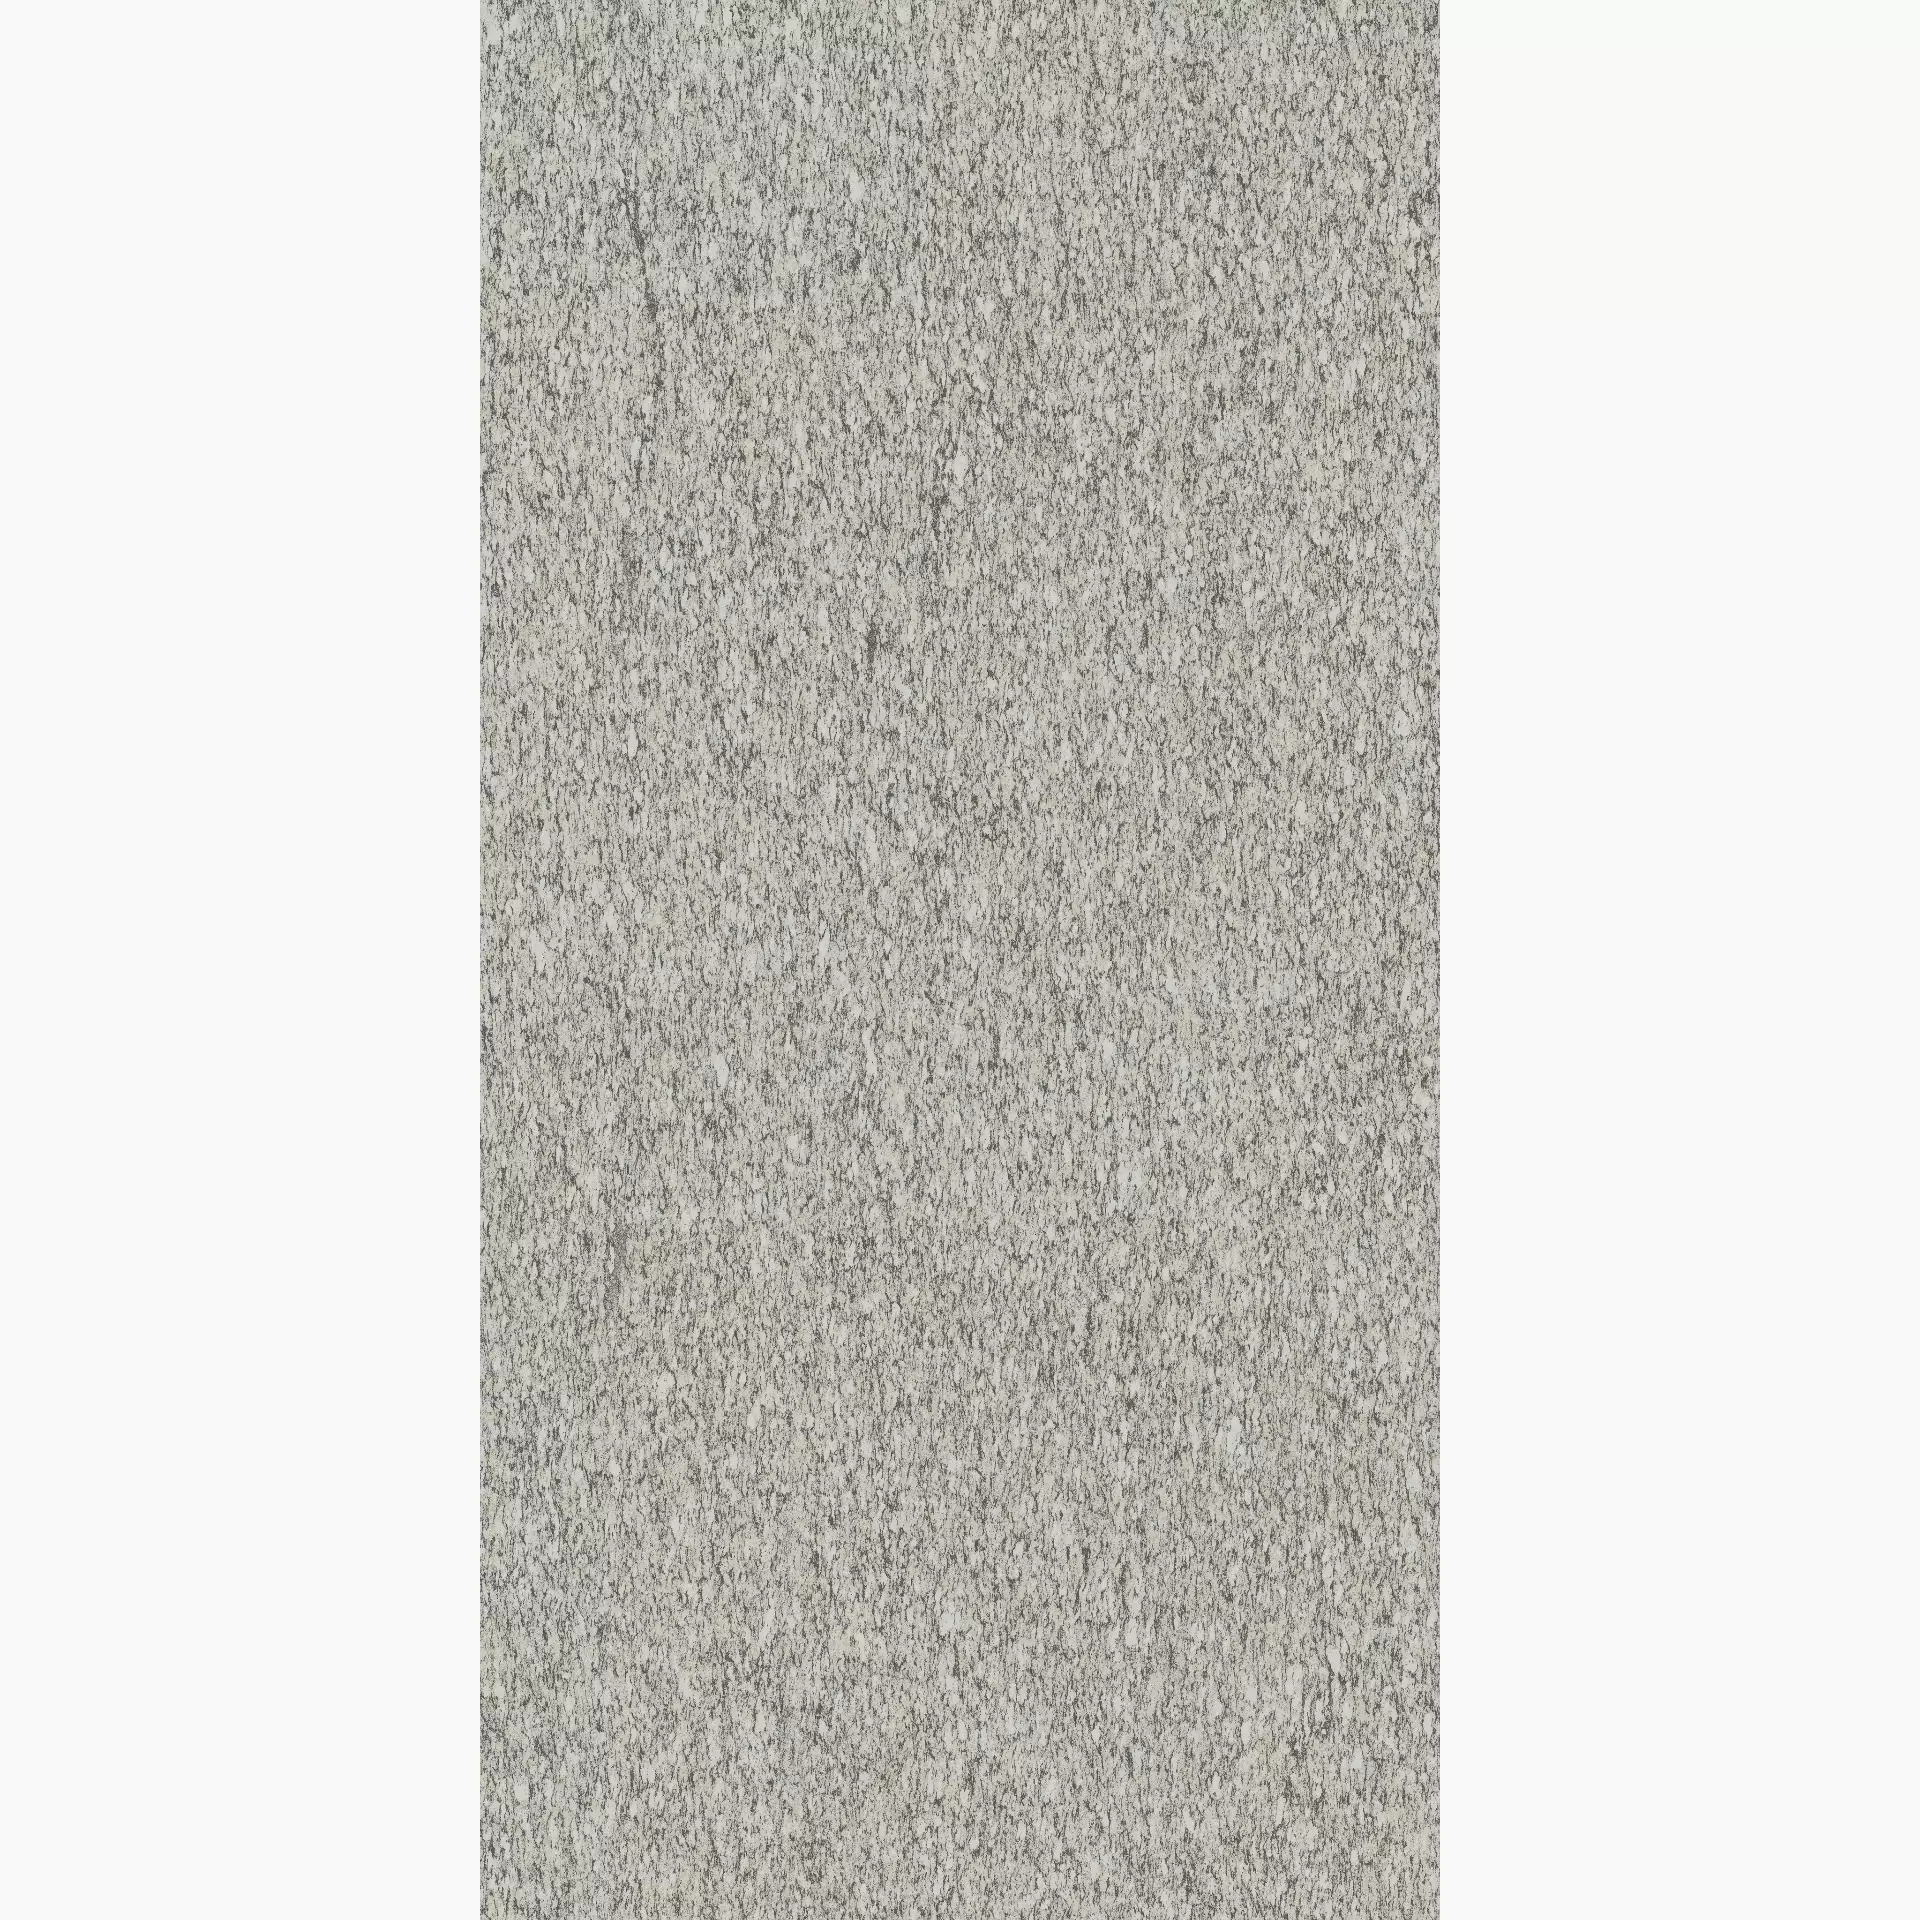 Florim Biotech Serizzo Stone Naturale – Matt Serizzo Stone 778860 matt natur 60x120cm rektifiziert 9mm